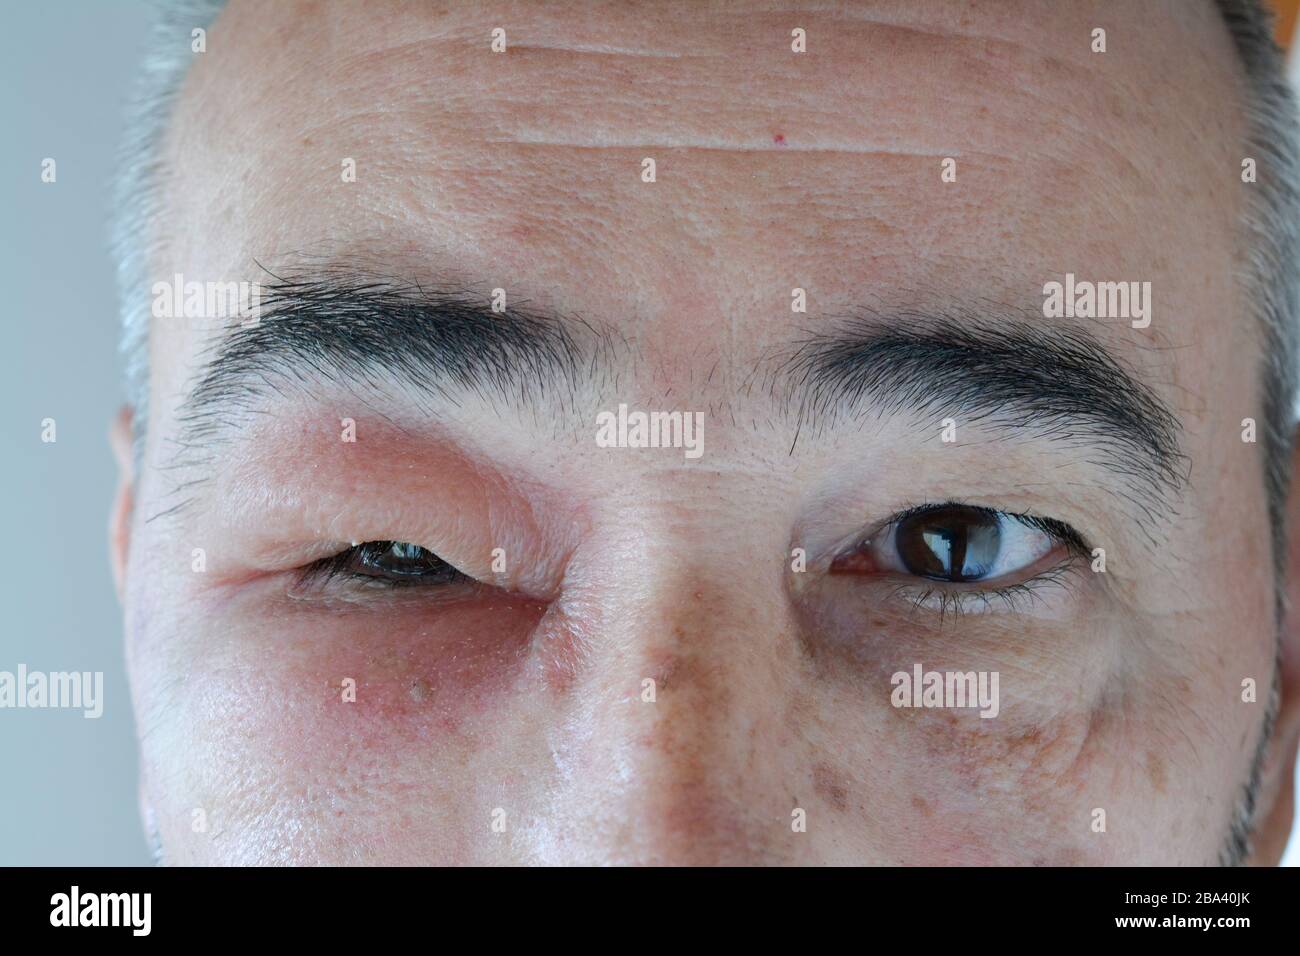 Visage de l'homme d'âge moyen avec oeil gonflé de la piqûre de la guêpe, nécrose visible autour du site d'injection, gros plan Banque D'Images